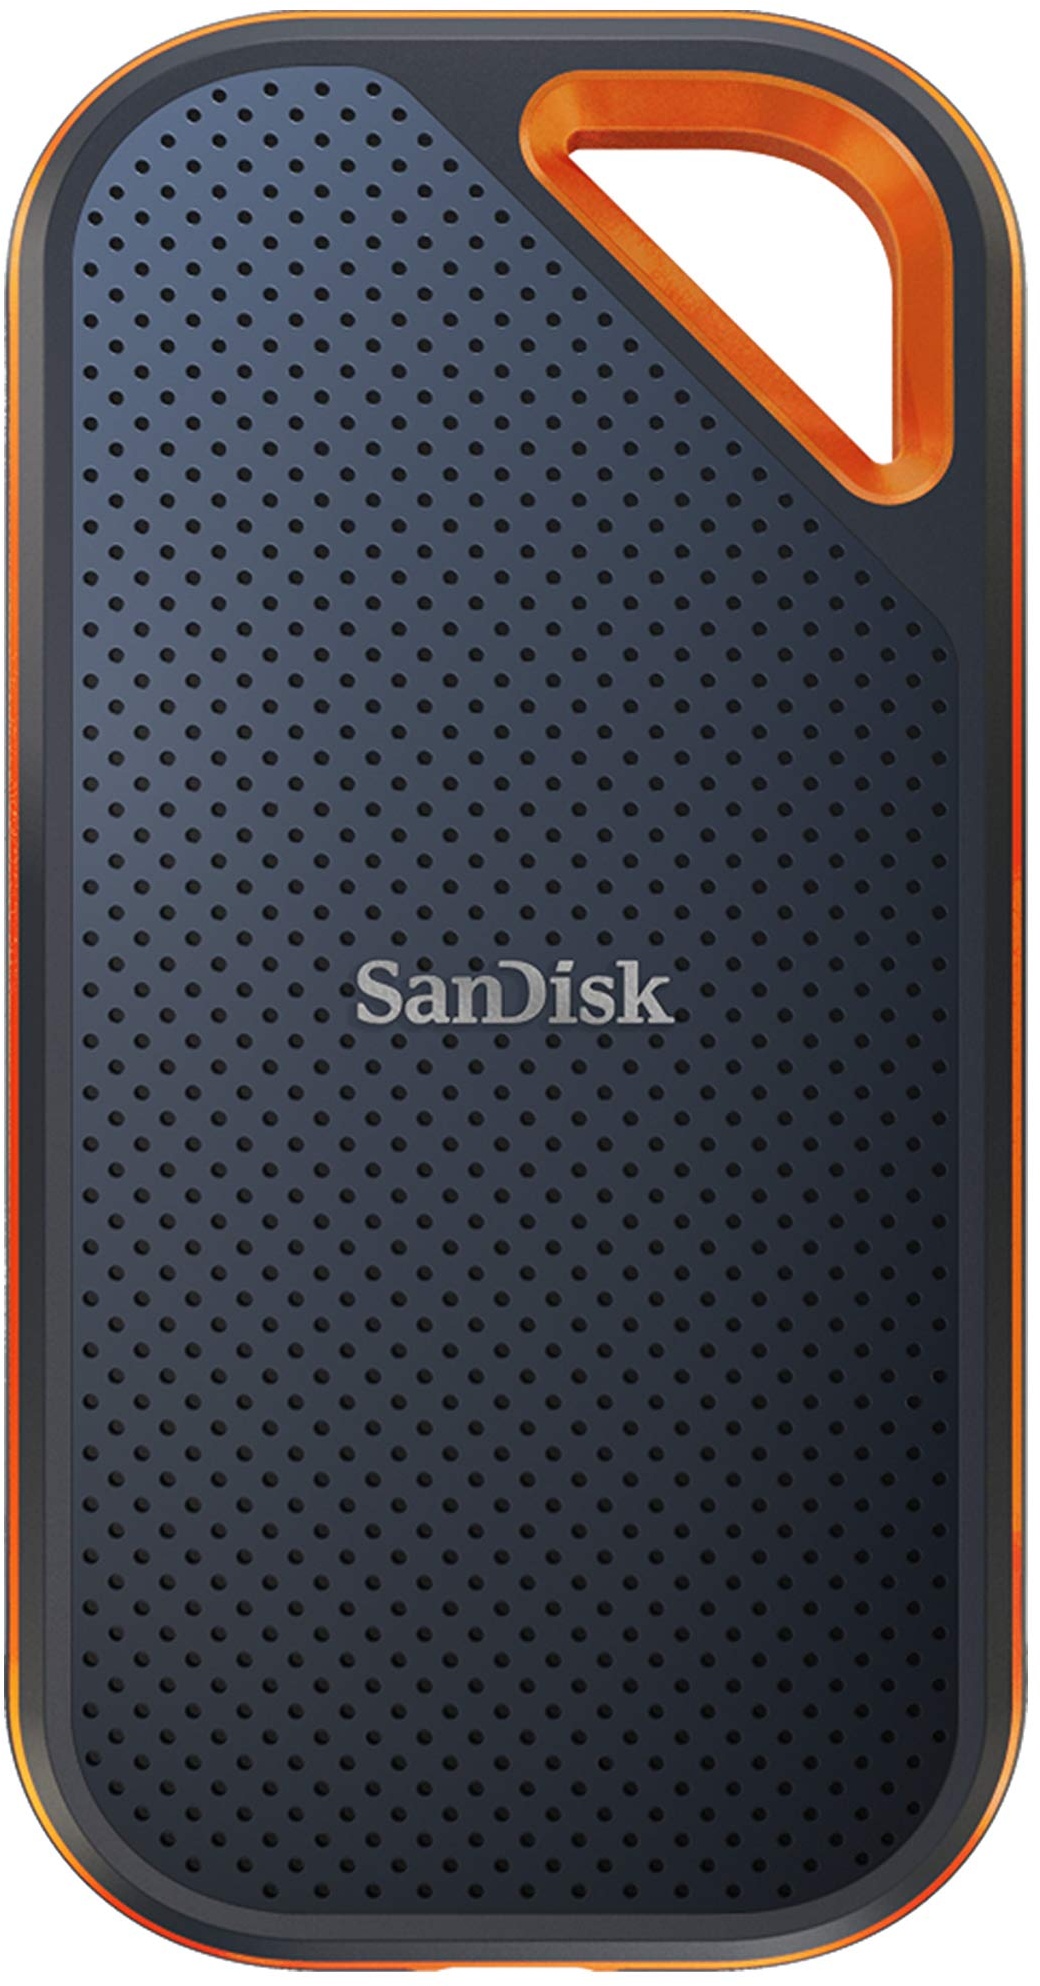 SanDisk Extreme PRO Portable SSD externe SSD 2 TB (externe Festplatte mit SSD Technologie 2,5 Zoll, 2000 MB/s Lesen und Schreiben, stoßfest, AES-Verschlüsselung, wasser- und staubfest) grau